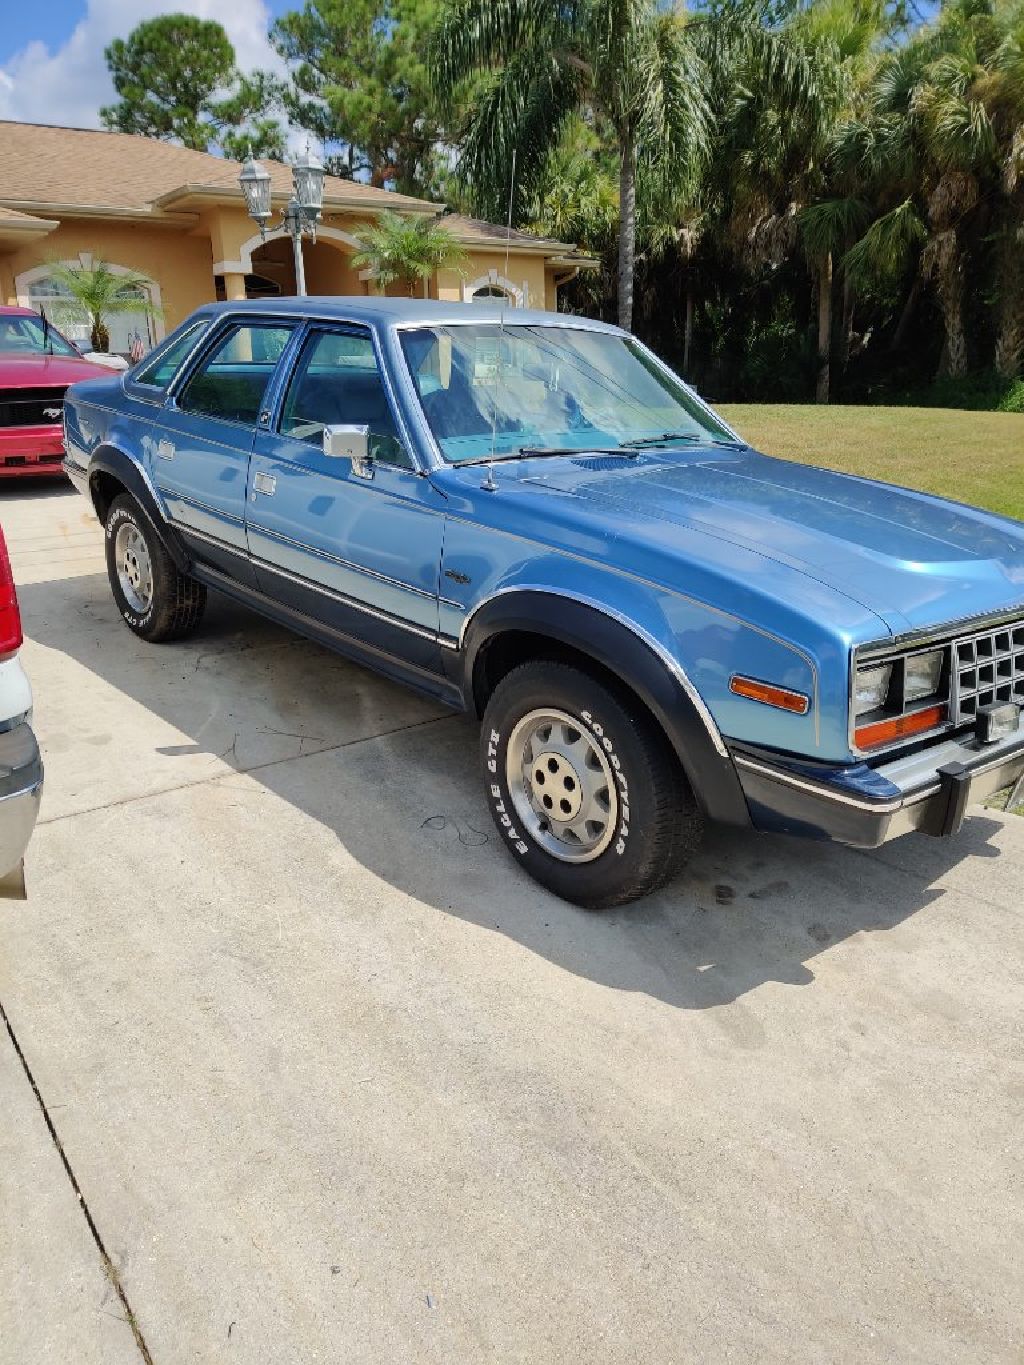 1986 AMC Eagle 4x4 coupe - Claz.org